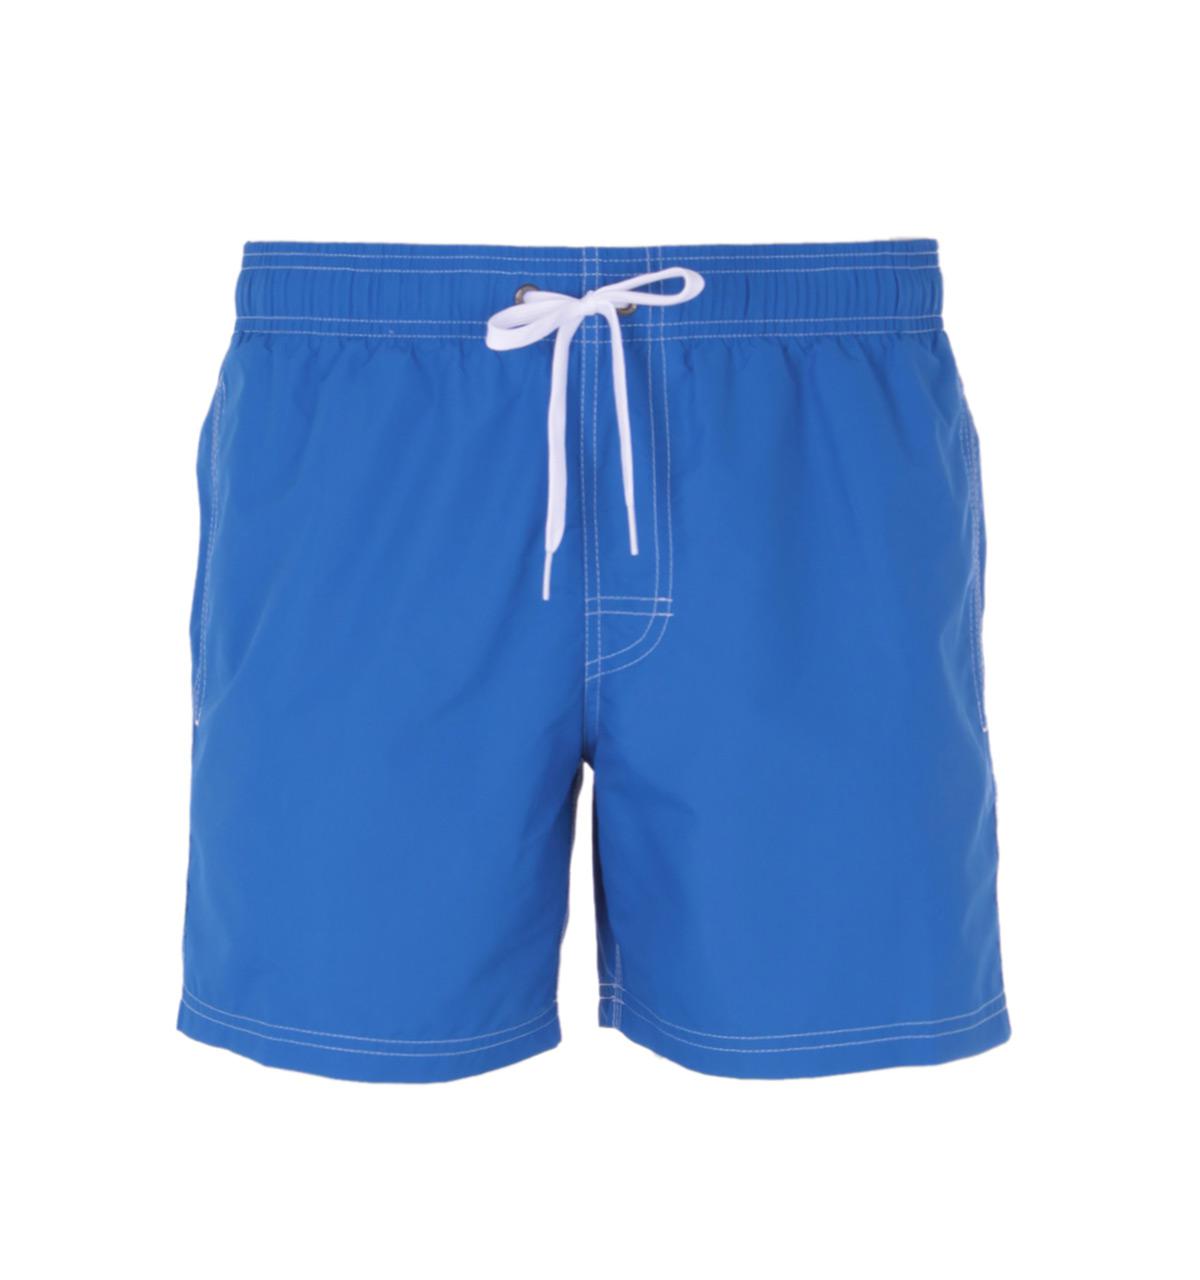 Lyst - Sundek Quick Drying Ocean Blue Swim Shorts in Blue for Men